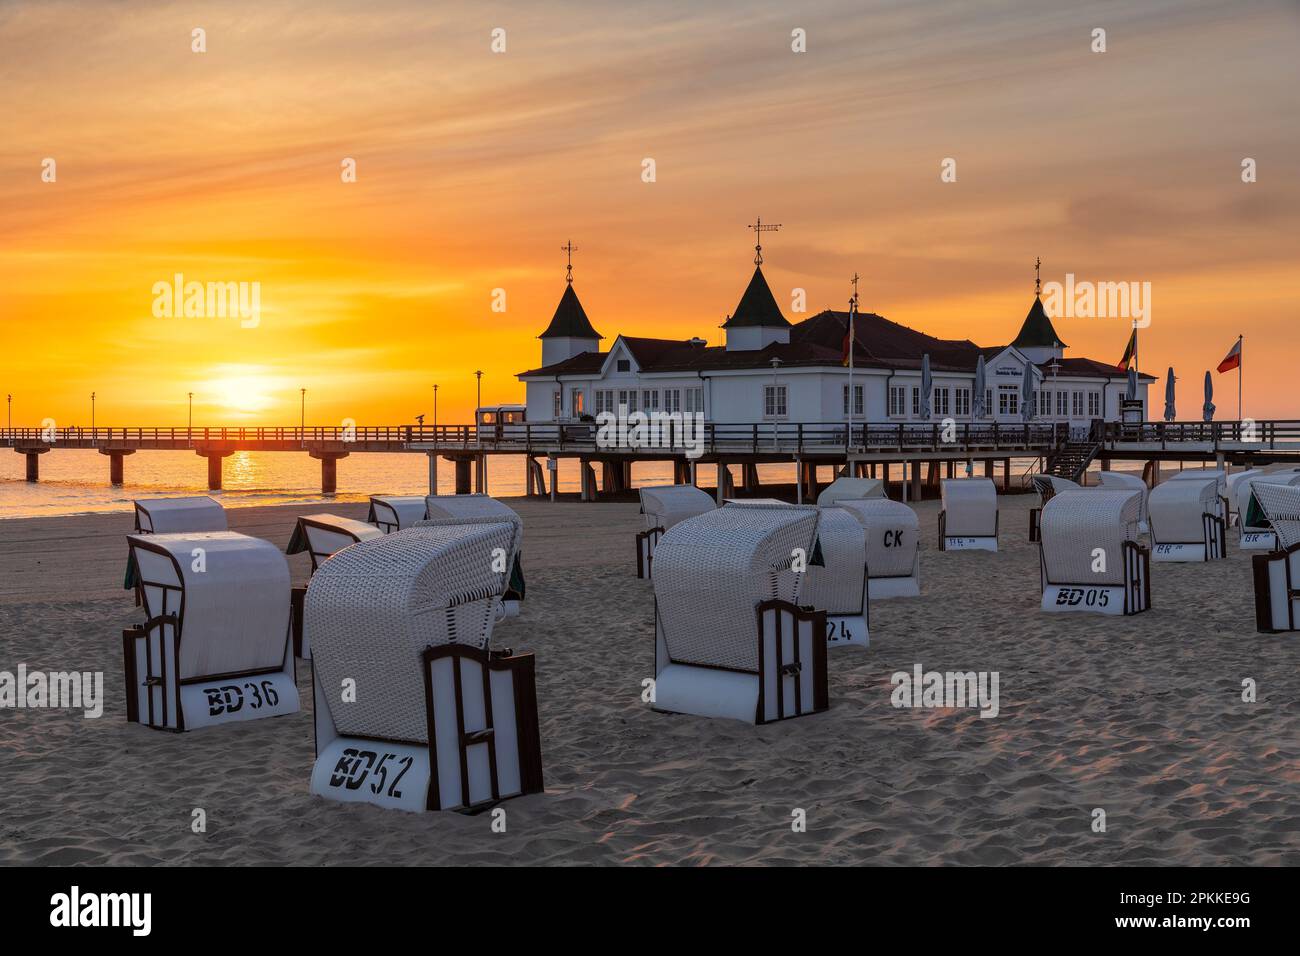 Molo e sedie a sdraio sulla spiaggia di Ahlbeck, Usedom Island, Mar Baltico, Meclemburgo-Pomerania occidentale, Germania, Europa Foto Stock